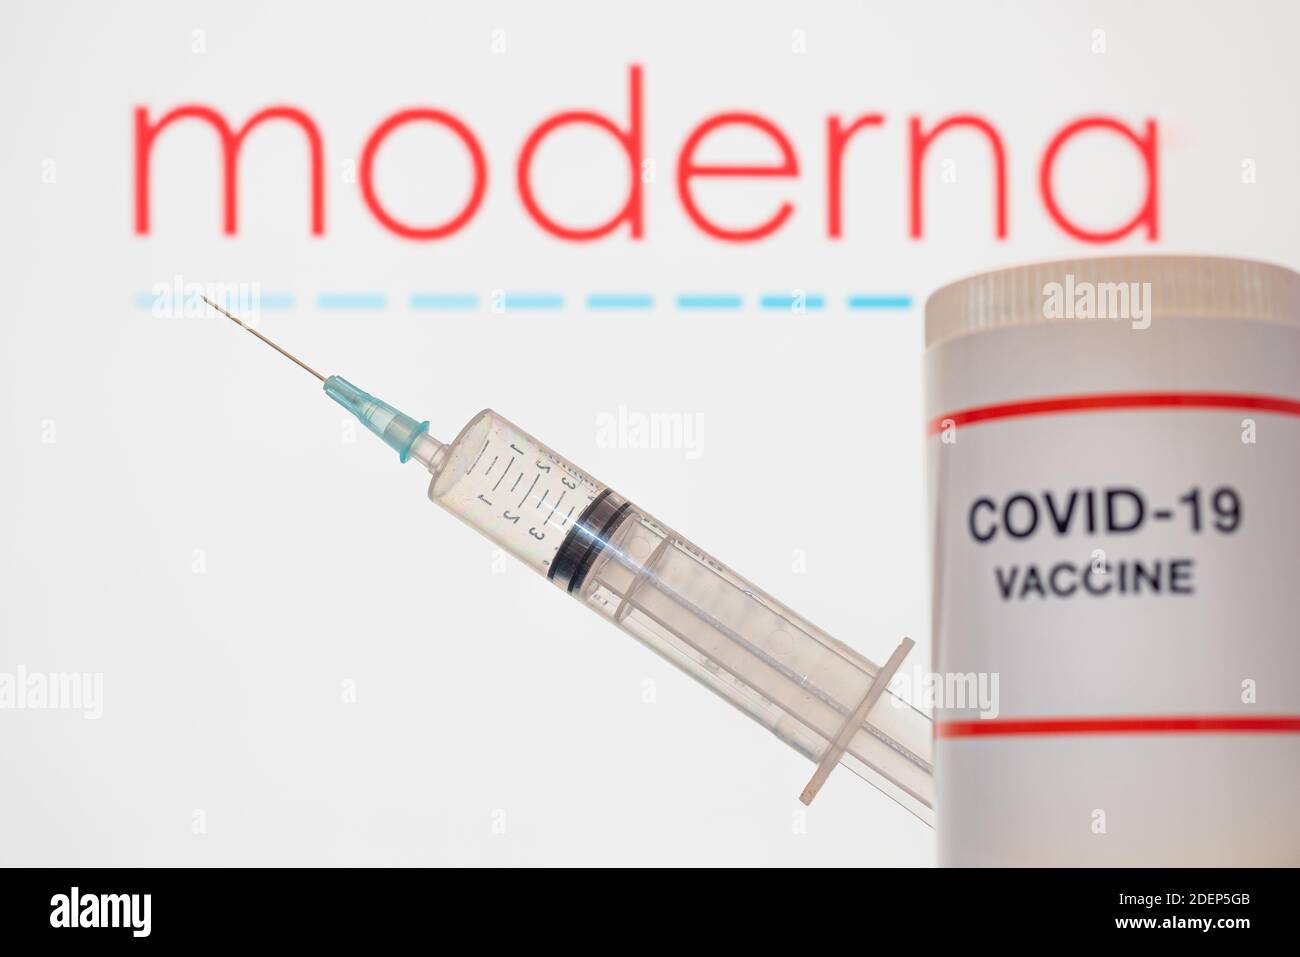 Vaccin de Moderna Company contre Covid-19 et une seringue sur fond blanc, Danemark, 1er décembre 2020 Banque D'Images